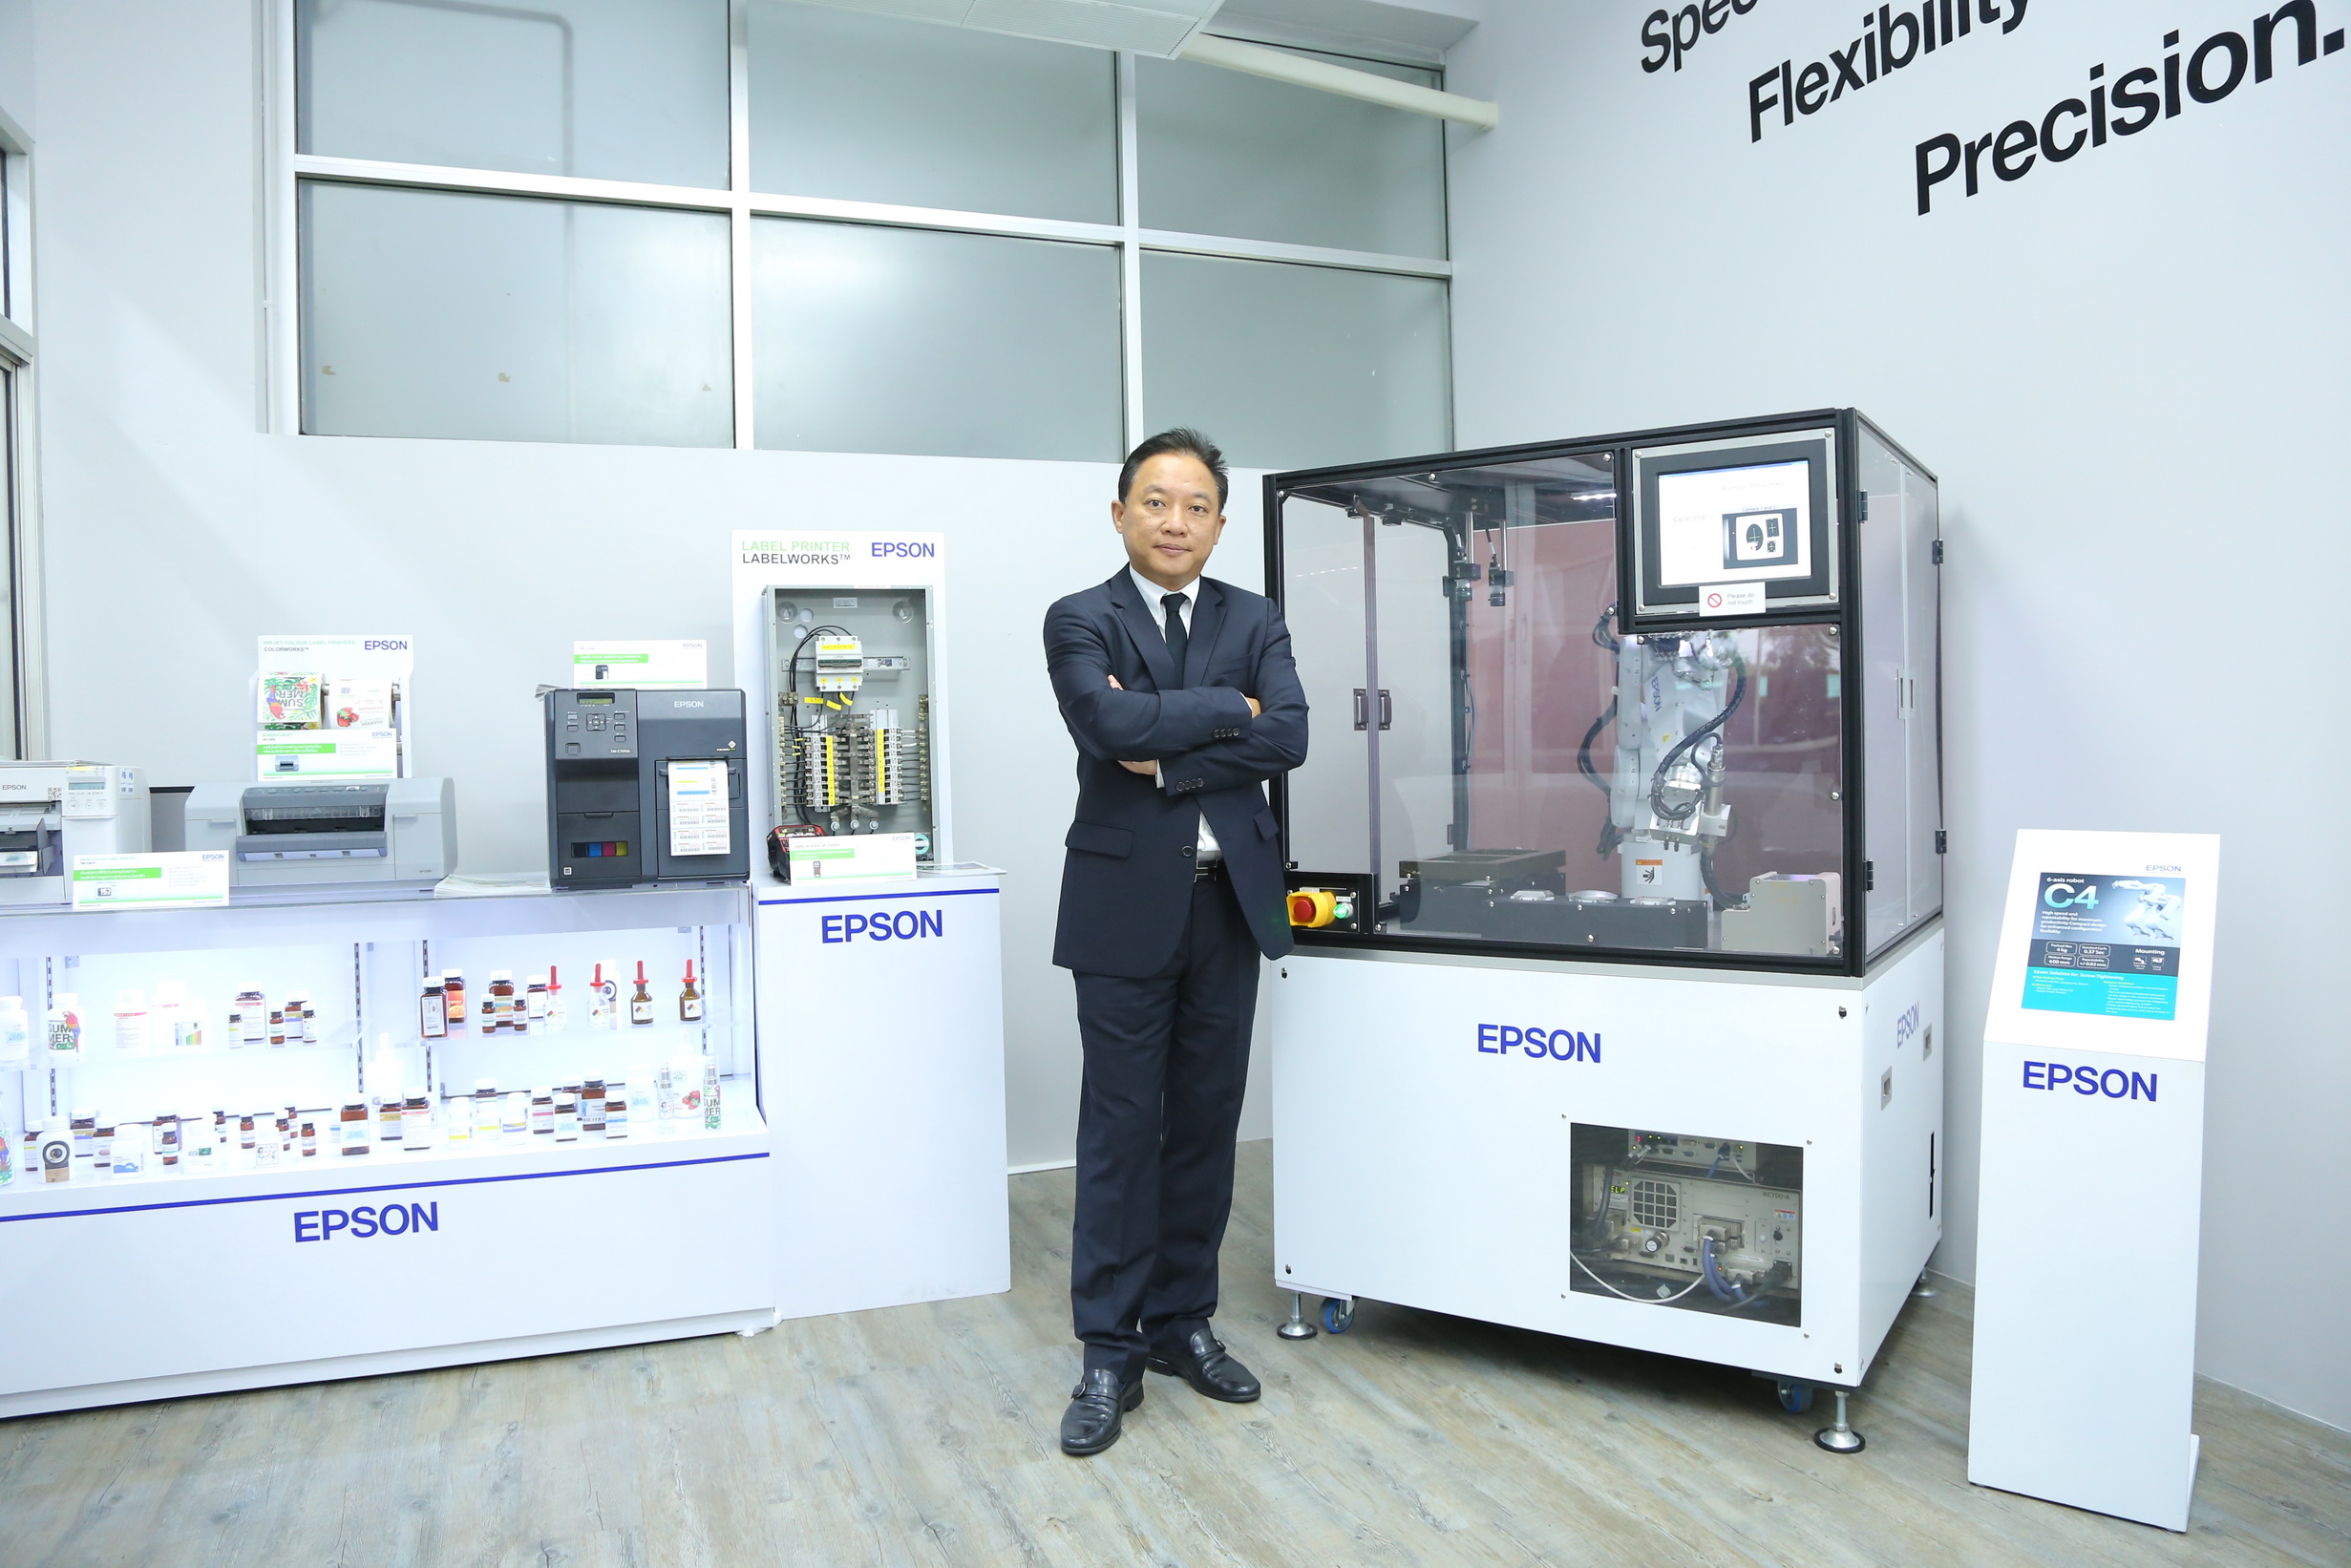 เอปสันเปิดศูนย์นวัตกรรมหุ่นยนต์เตรียมความพร้อมอุตสาหกรรมไทย ใช้หุ่นยนต์พัฒนากระบวนการผลิตรับยุคไทยแลนด์ 4.0 